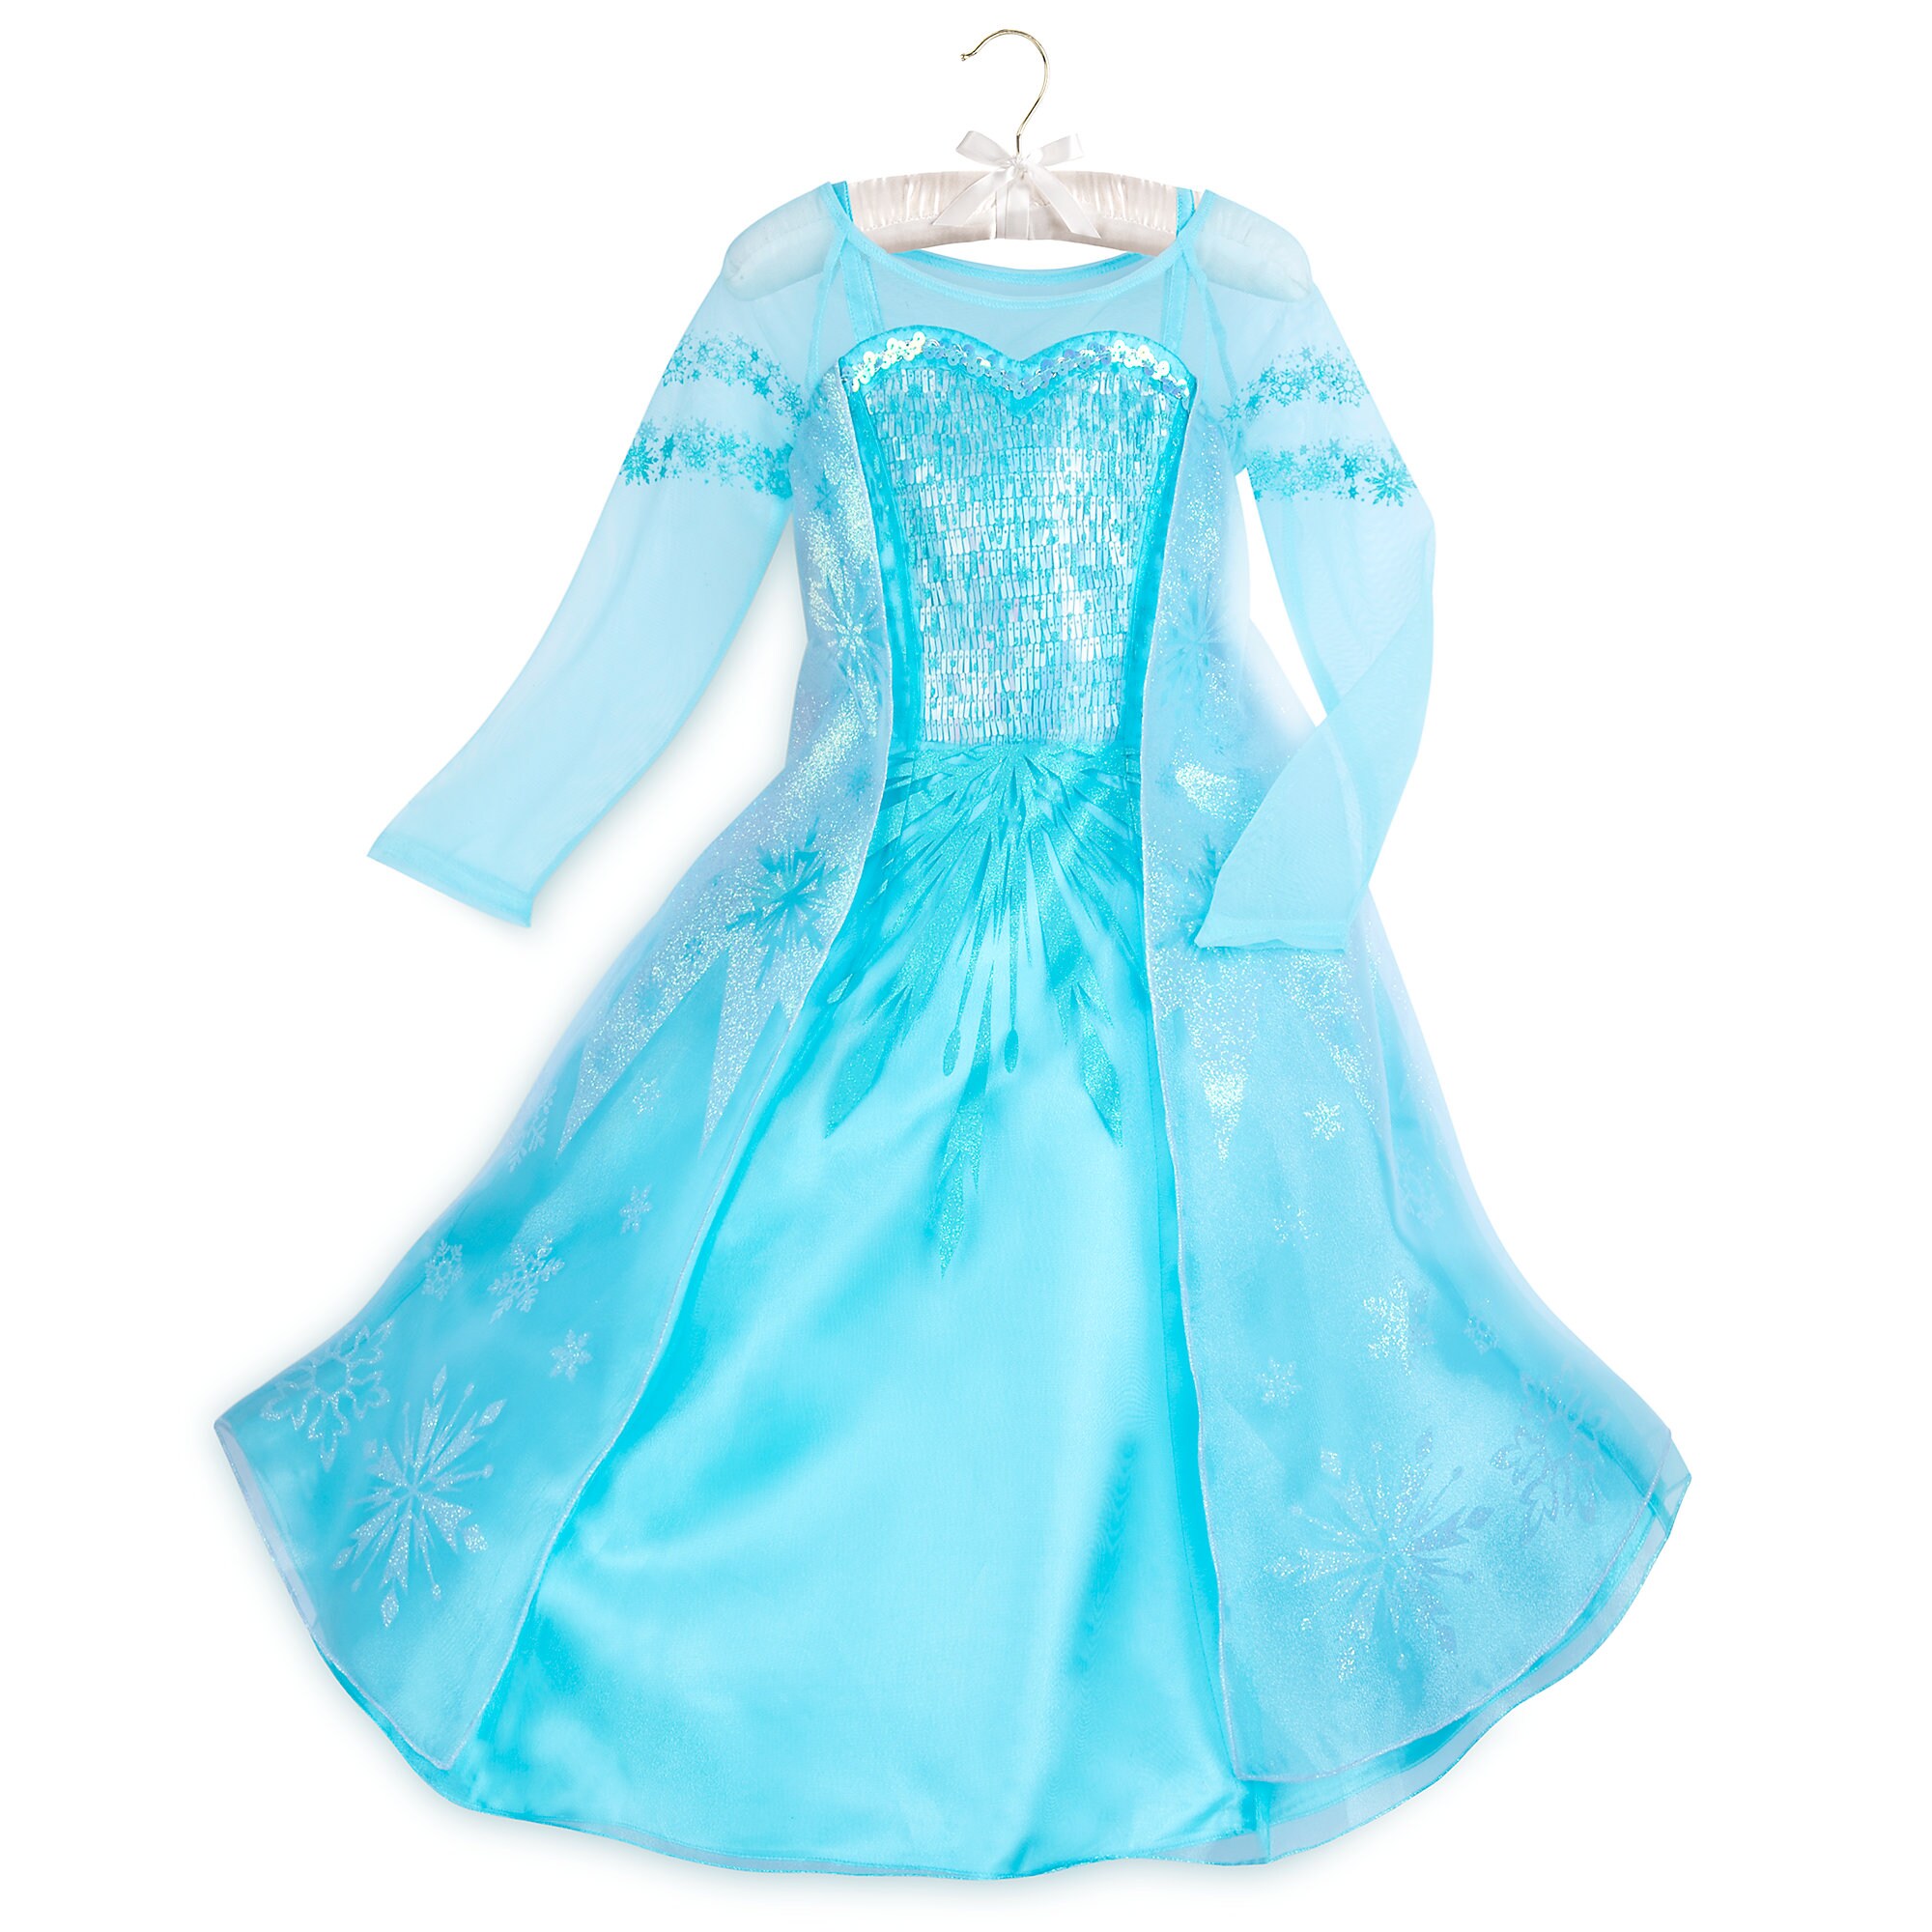 Elsa Costume for Kids - Frozen